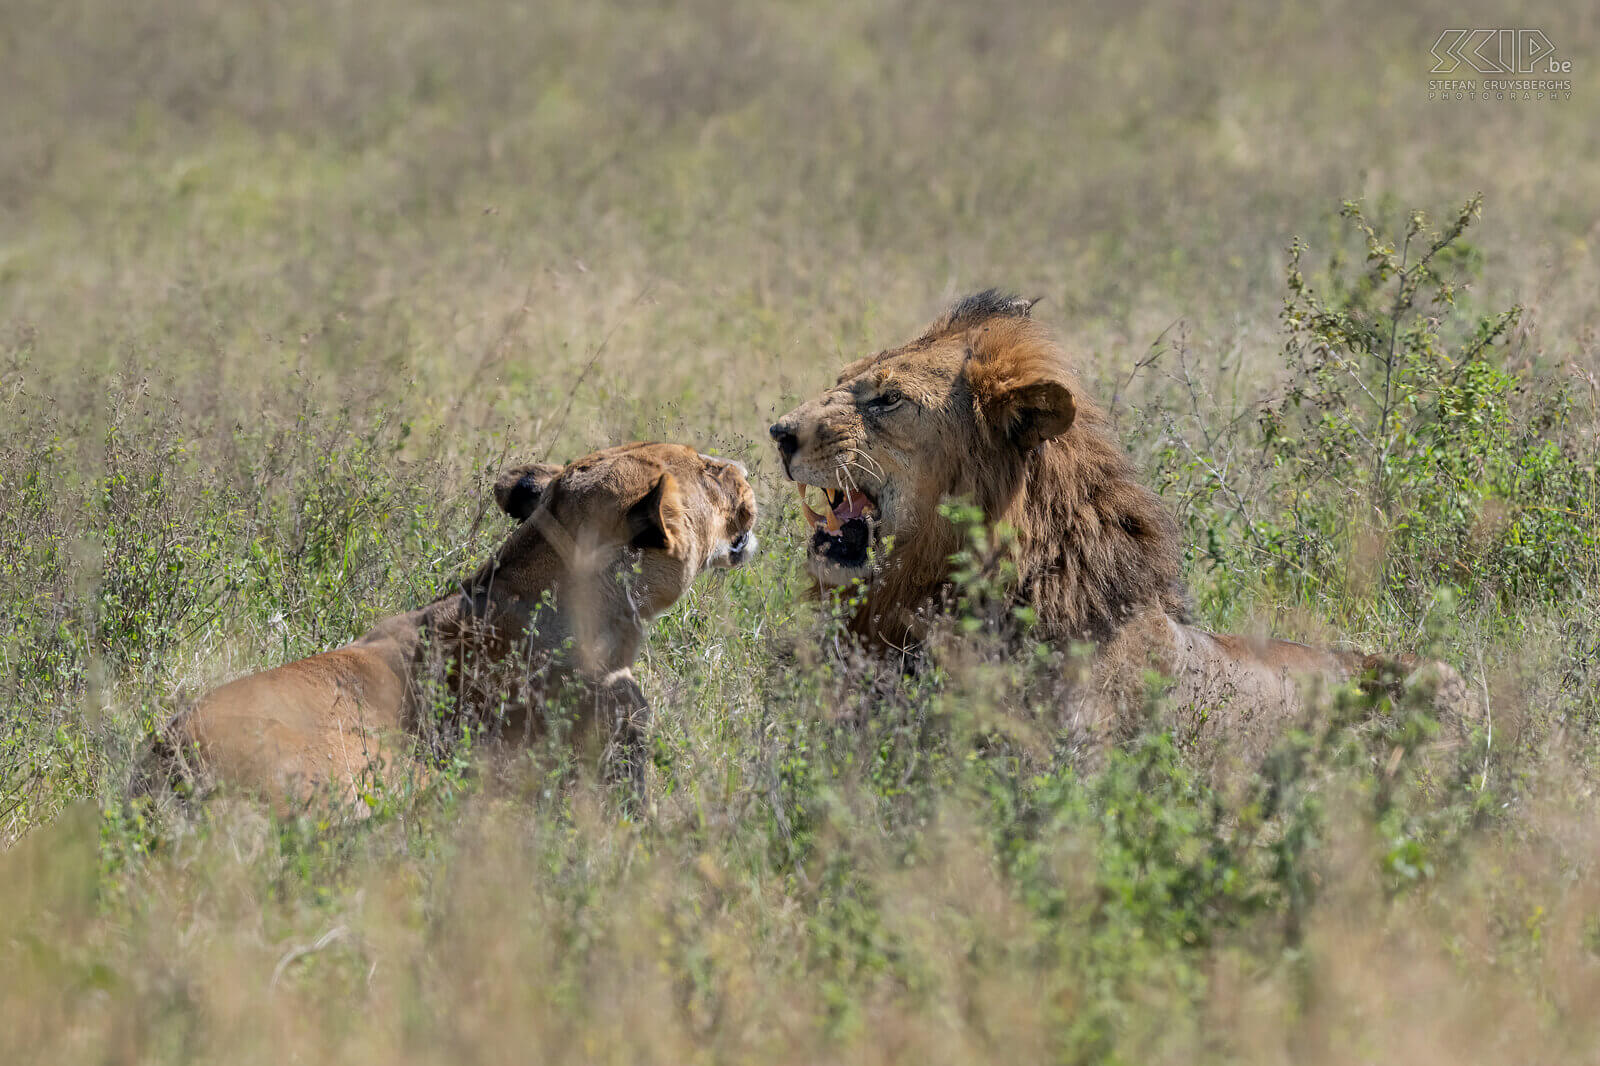 Nakuru NP - Koppel leeuwen In Nakuru NP konden we 's morgens een koppel leeuwen spotten. Tien minuten zaten ze goed zichtbaar in het hoge gras, nadien verplaatsten ze zich en gingen liggen in nog hoger gras waardoor ze amper te zien waren. Altijd indrukwekkend om deze machtige katten in het wild te zien. Stefan Cruysberghs